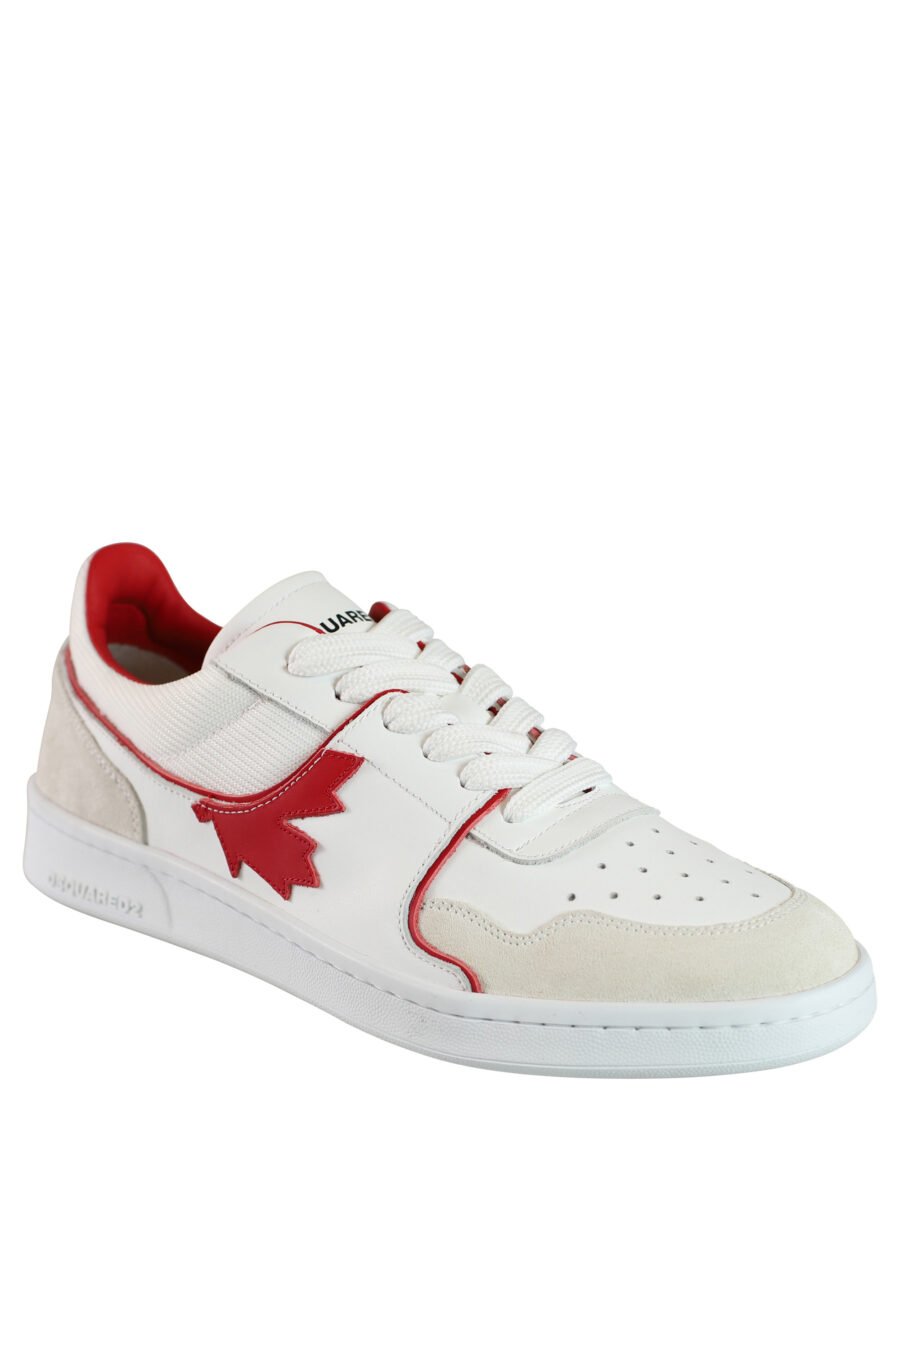 Zapatillas blancas mix con logo y detalles en rojo - 8055777188194 2